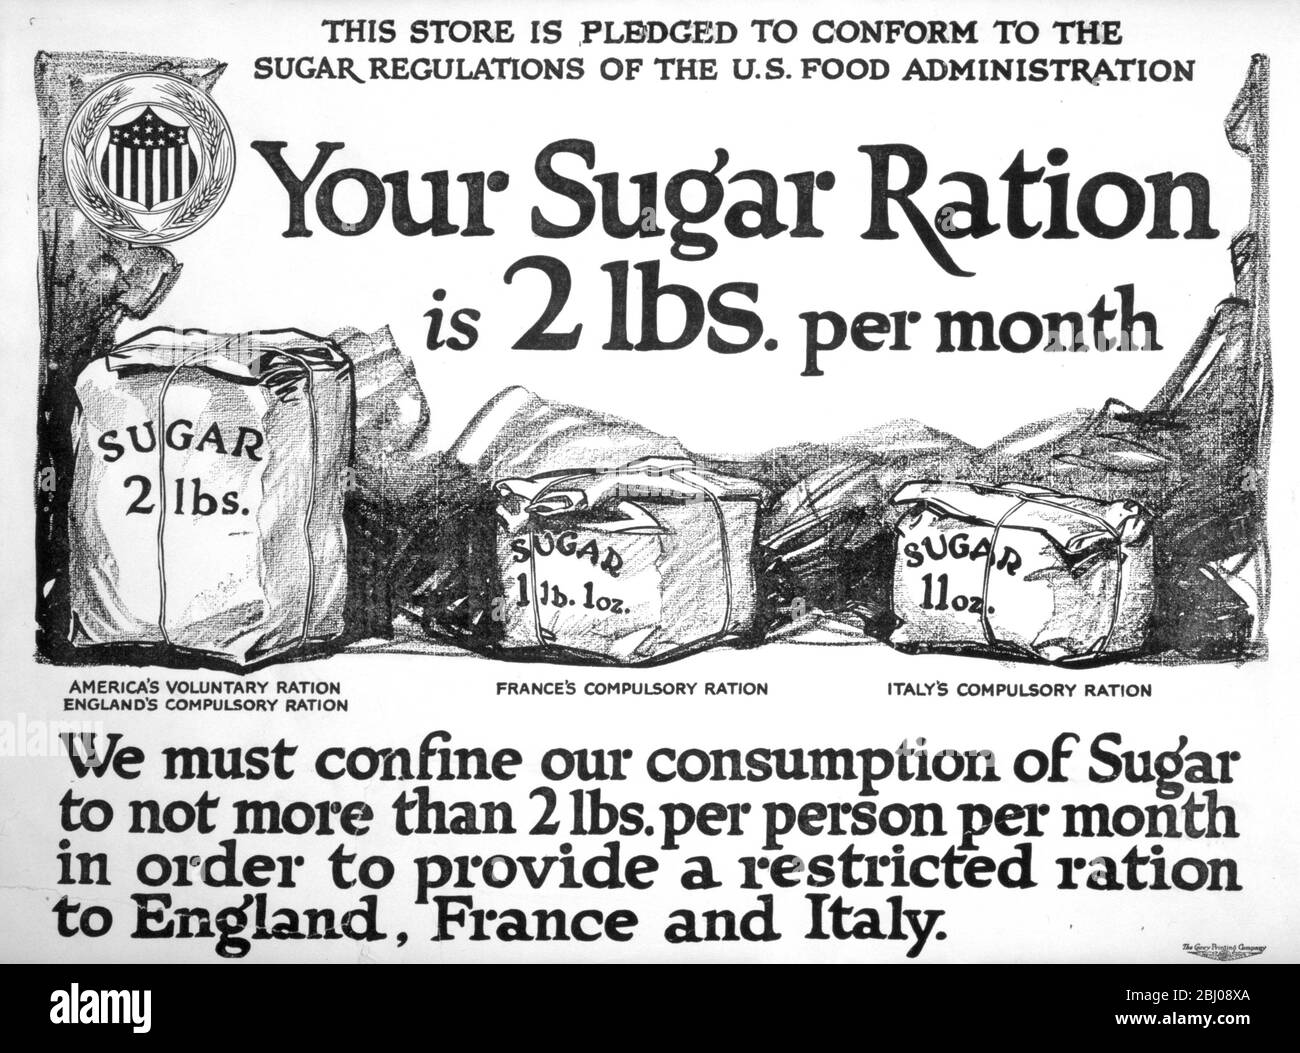 Affiche américaine de la première Guerre mondiale - - votre ration de sucre est de 2 livres par mois - - - ce magasin est promis de se conformer à la réglementation du sucre de l'Administration alimentaire américaine. Nous devons limiter notre consommation de sucre à 2 livres par personne et par mois afin de fournir une ration restreinte à l'Angleterre, à la France et à l'Italie. - - la Carey Printing Company, New York. 1917 Banque D'Images